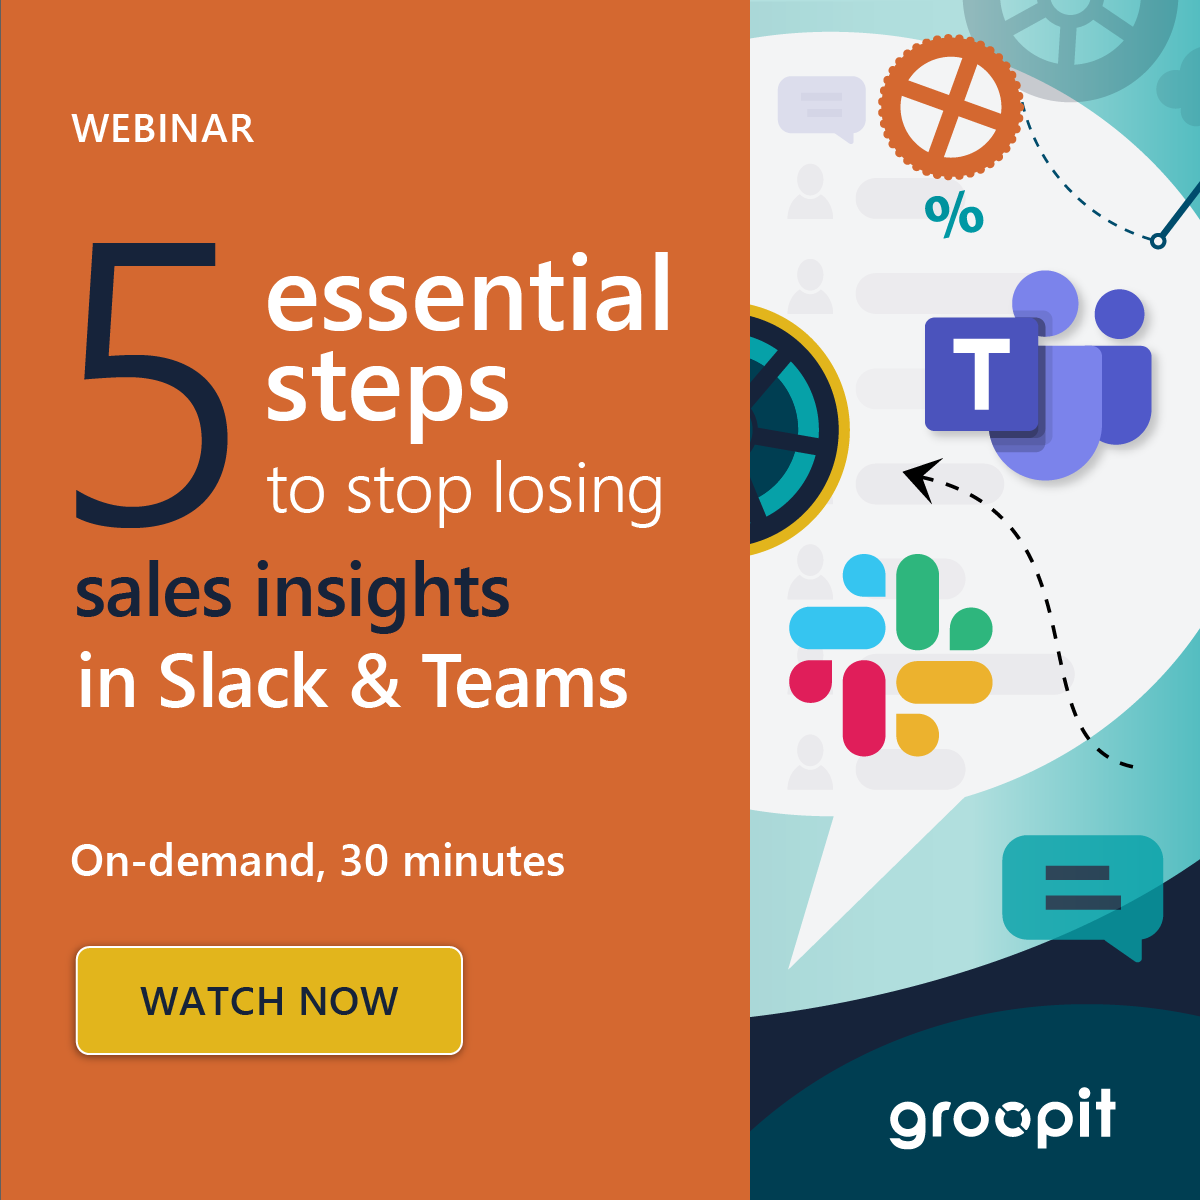 5 essential steps to stop losing sales insights in Slack & Teams webinar